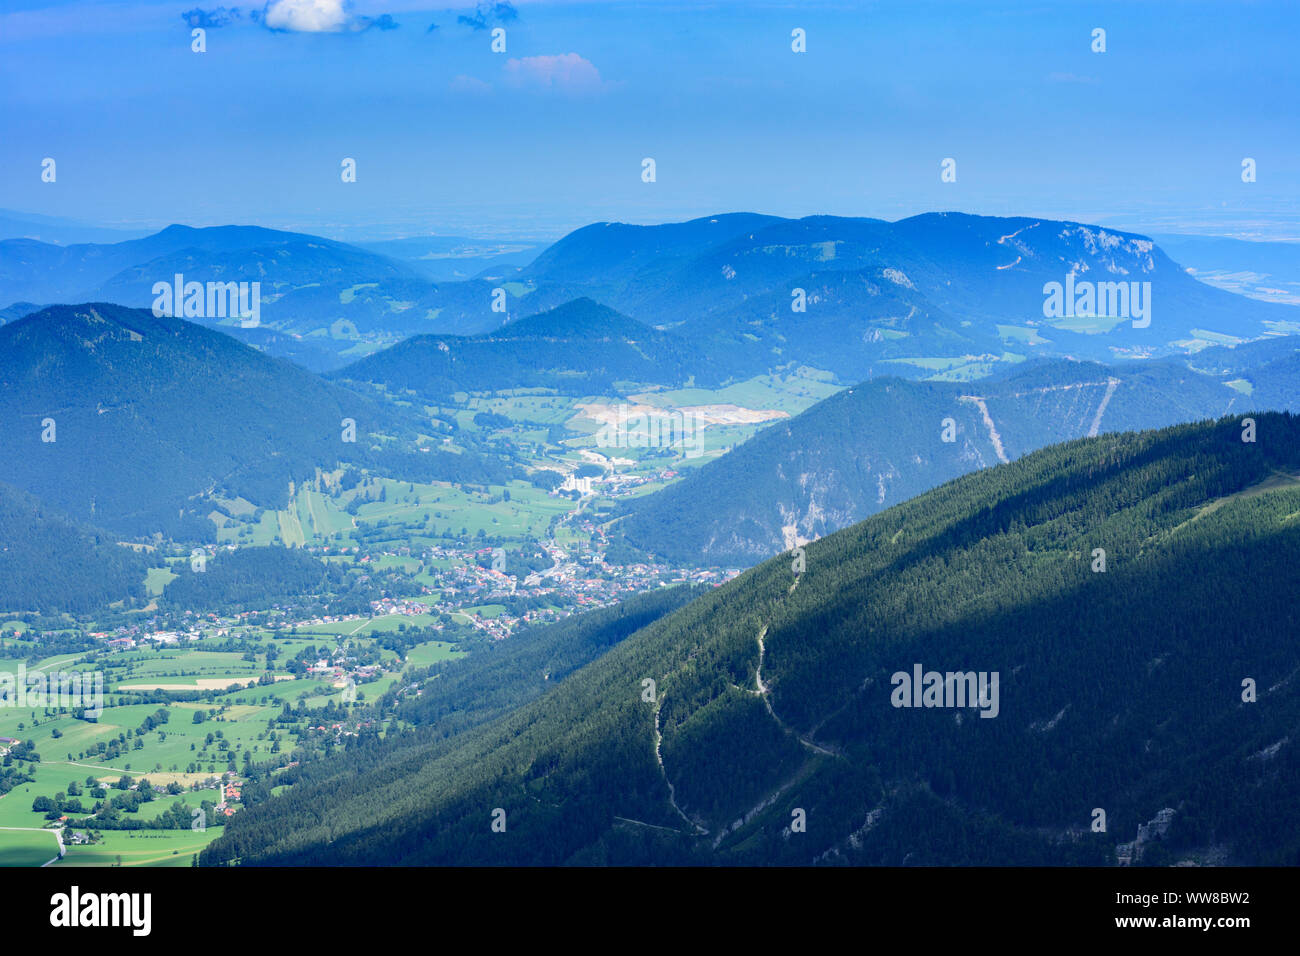 Puchberg am Schneeberg, view from mountain Schneeberg to Puchberg, Wiener Alpen (Vienna Alps), Alps, Lower Austria, Austria Stock Photo